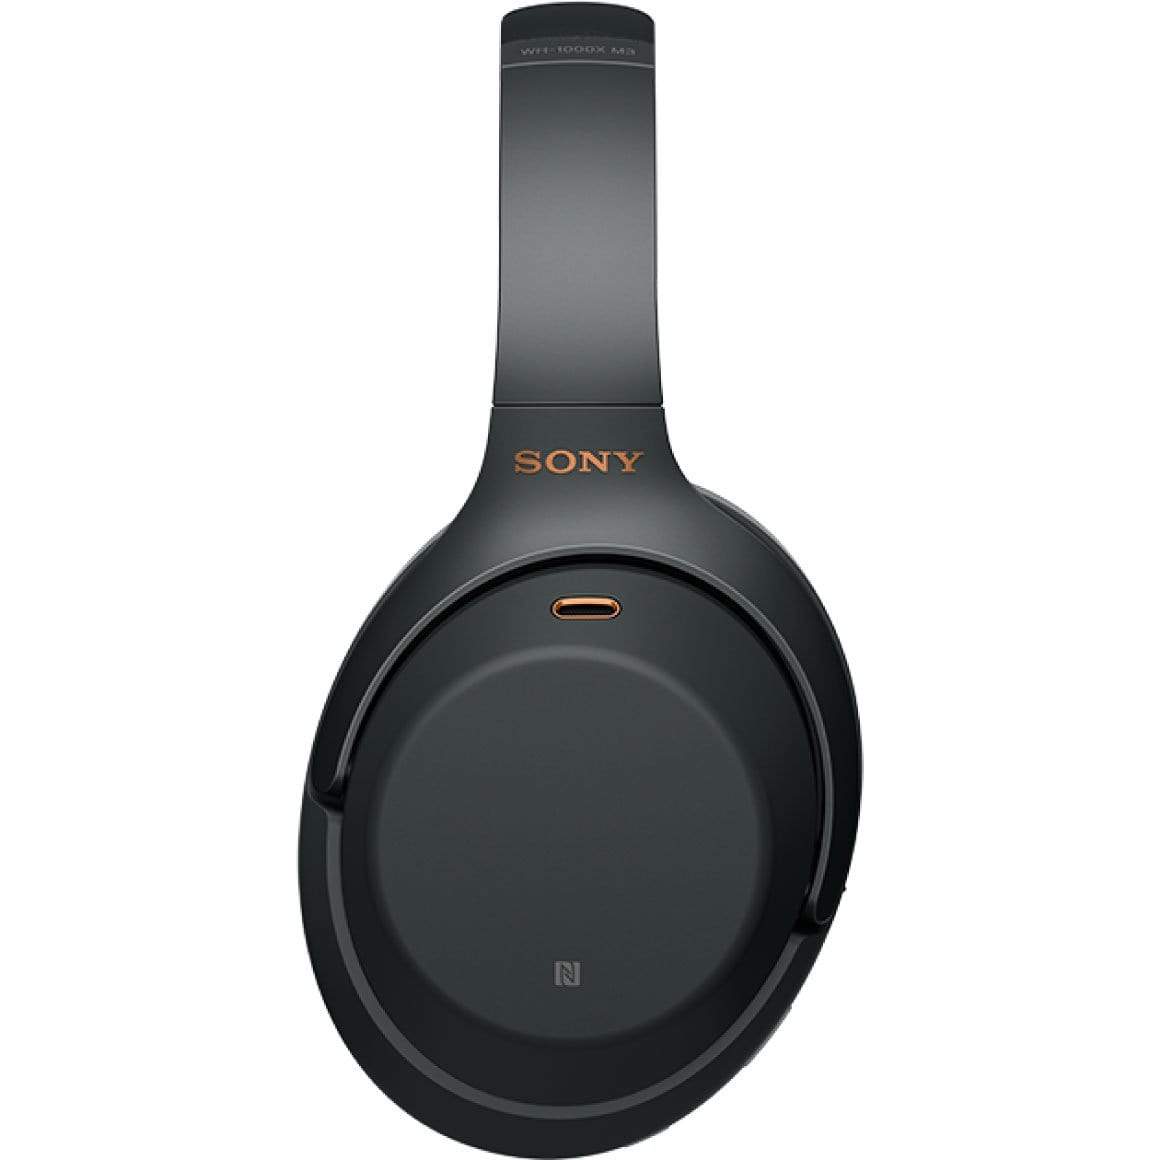 Sony - WH-1000XM3